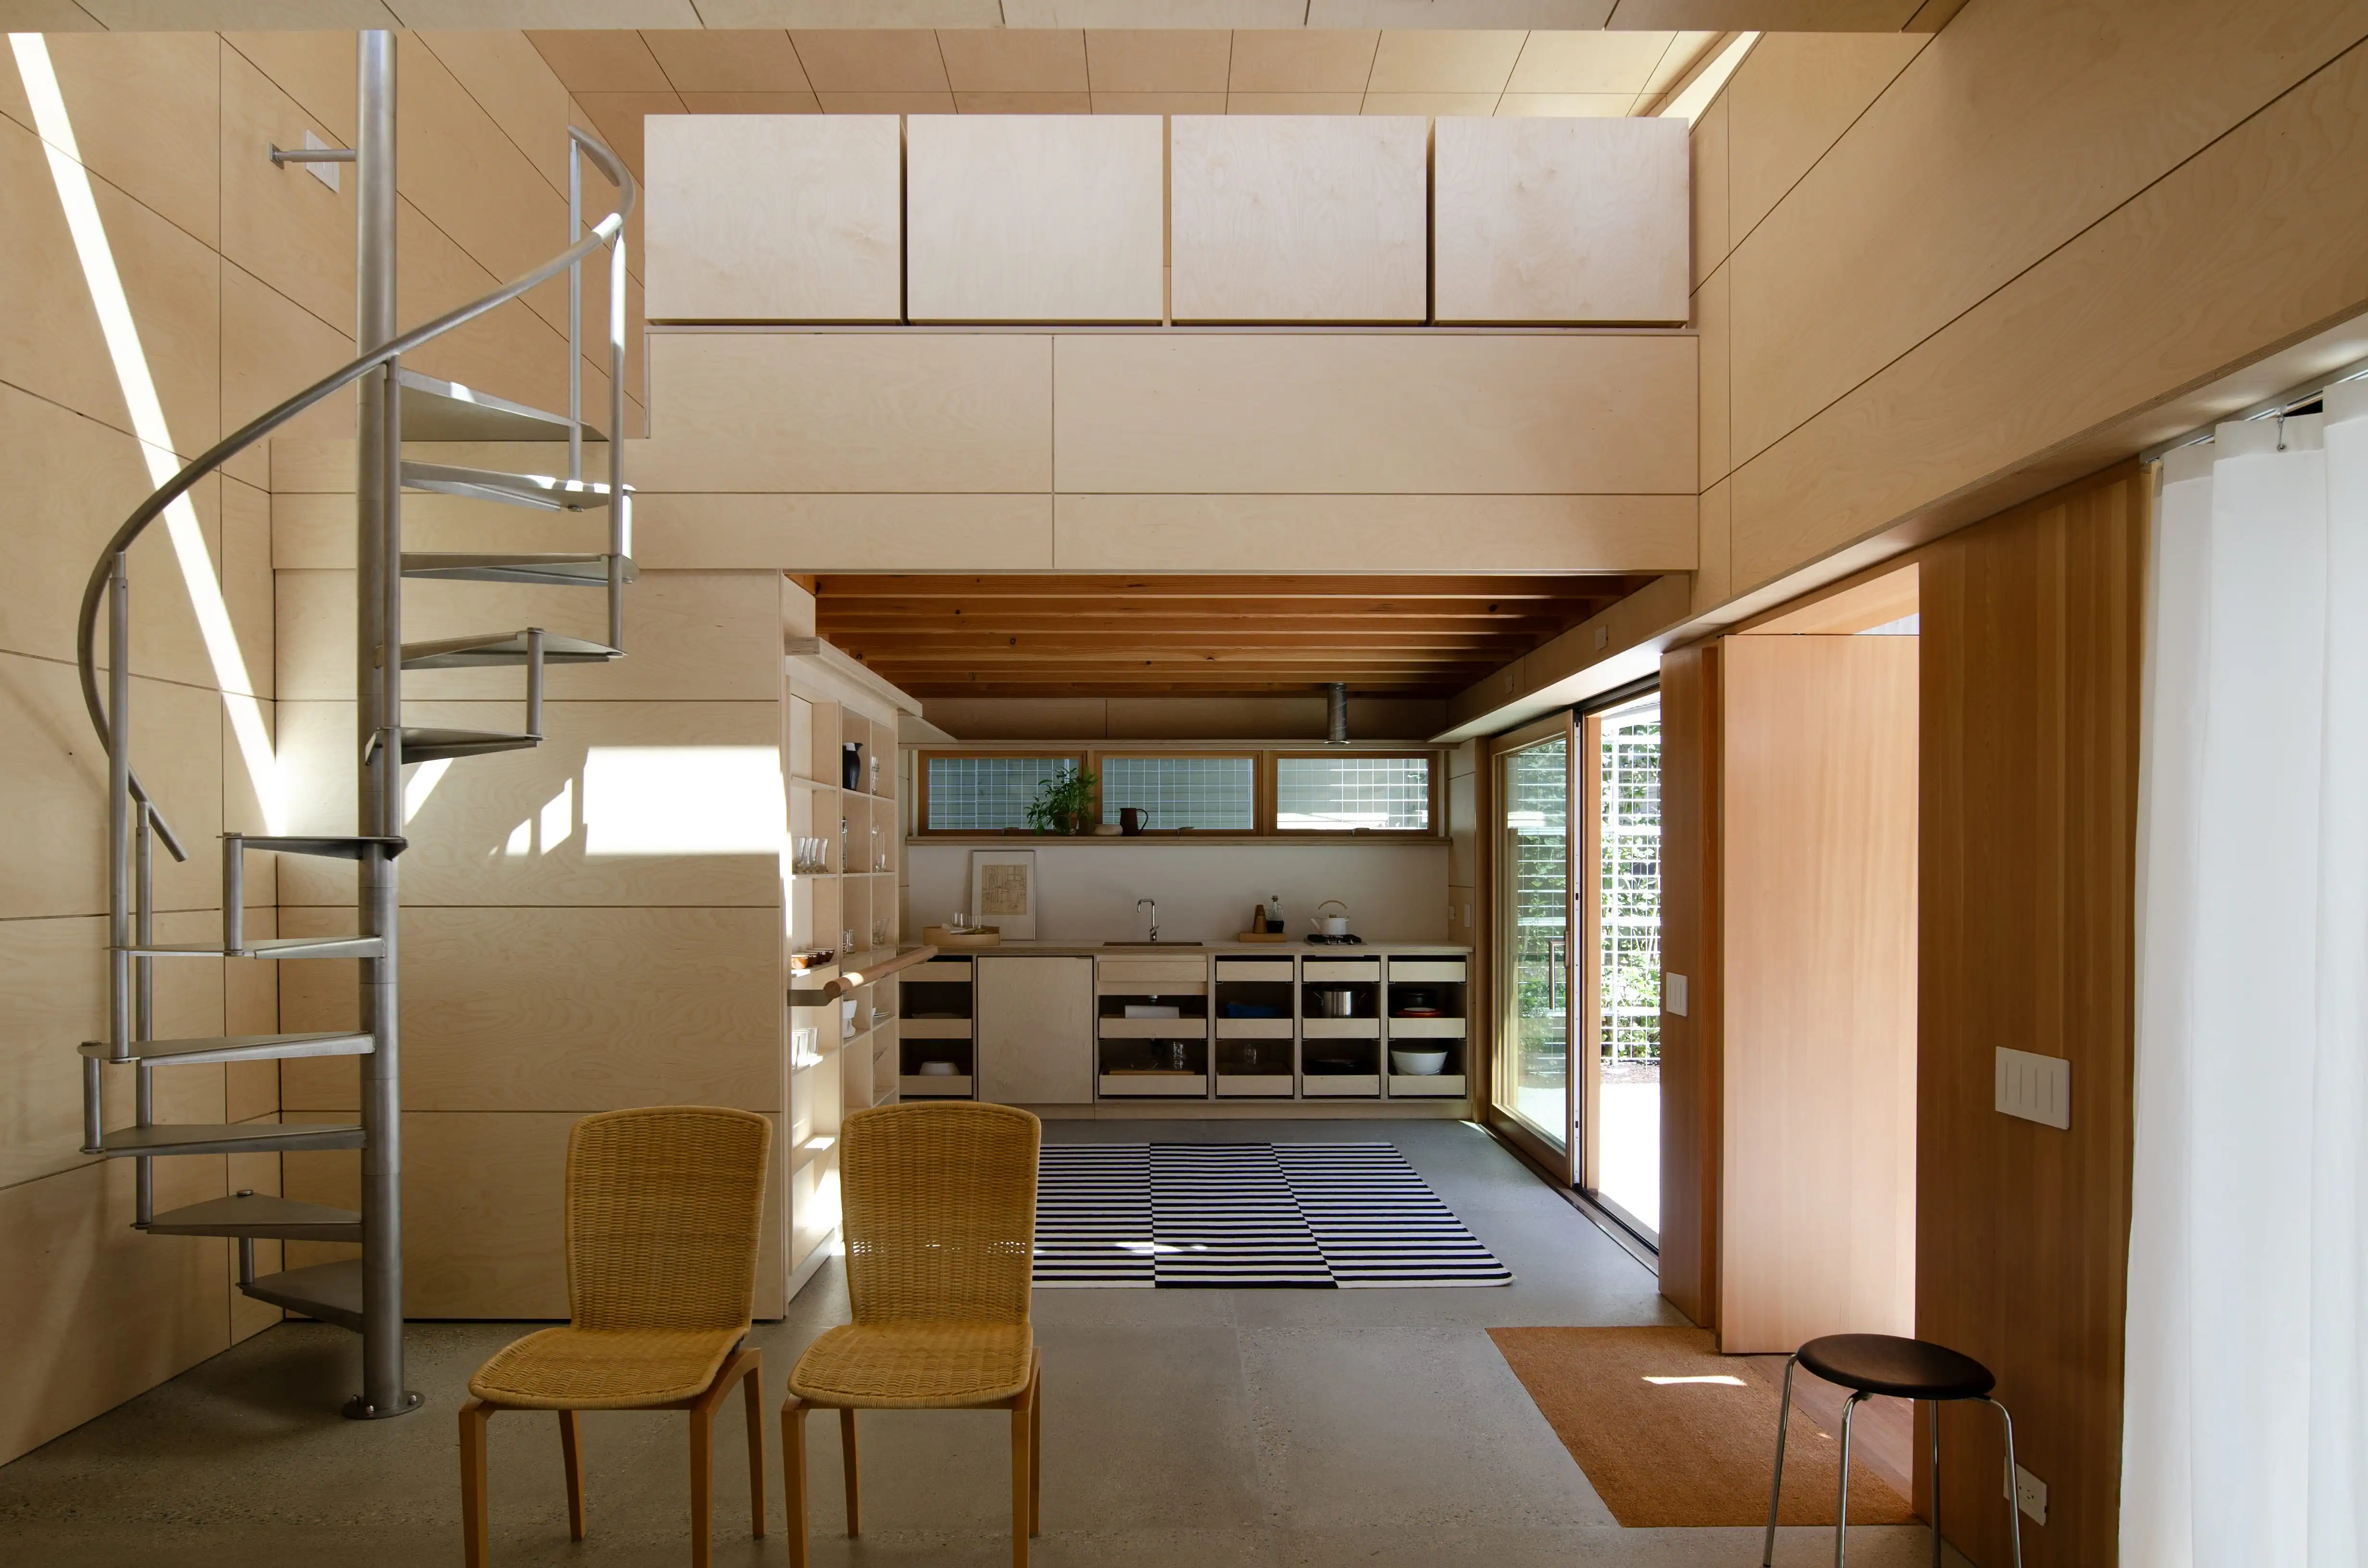 Studio Ea by Anthony Pellecchia Architect